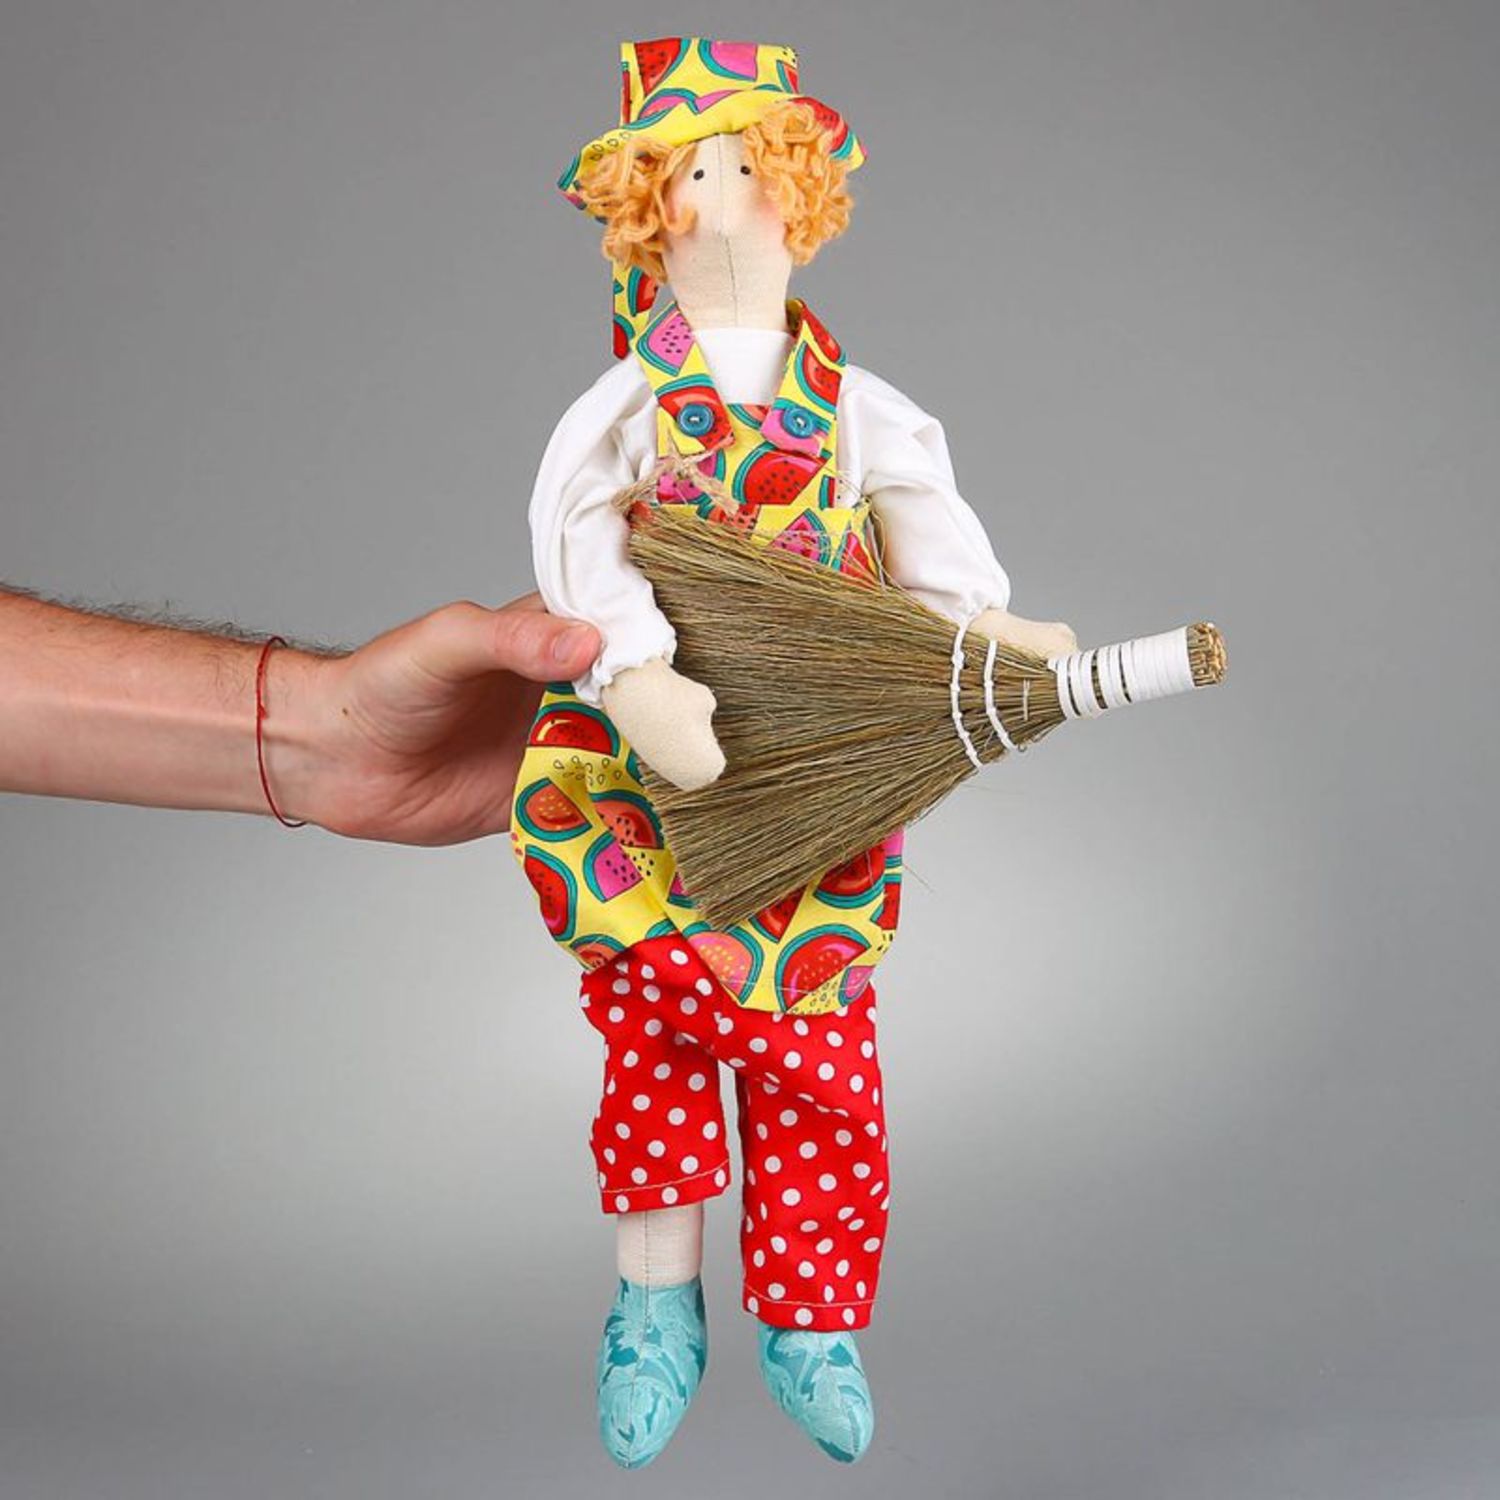 Авторская кукла Домовой с веником фото 3